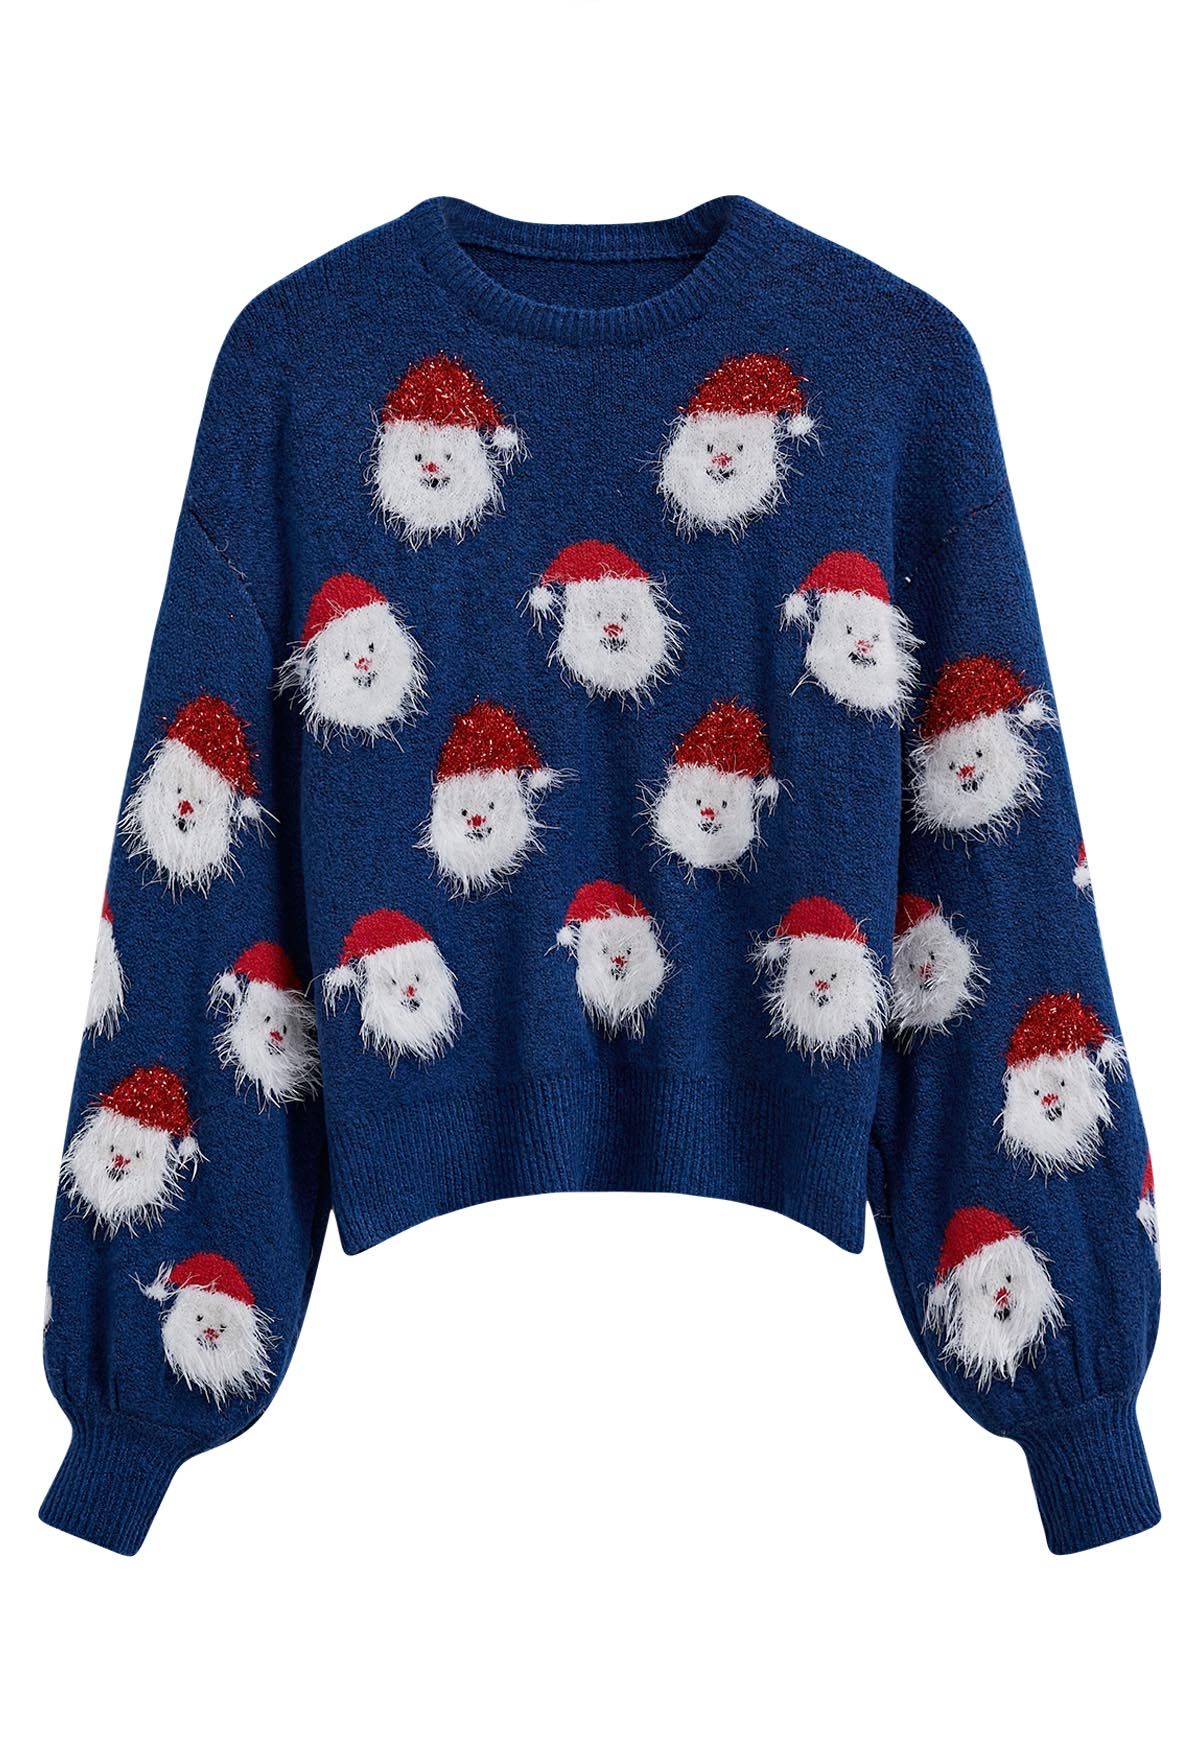 Fuzzy Santa Claus Knit Top in Indigo - Retro, Indie and Unique Fashion